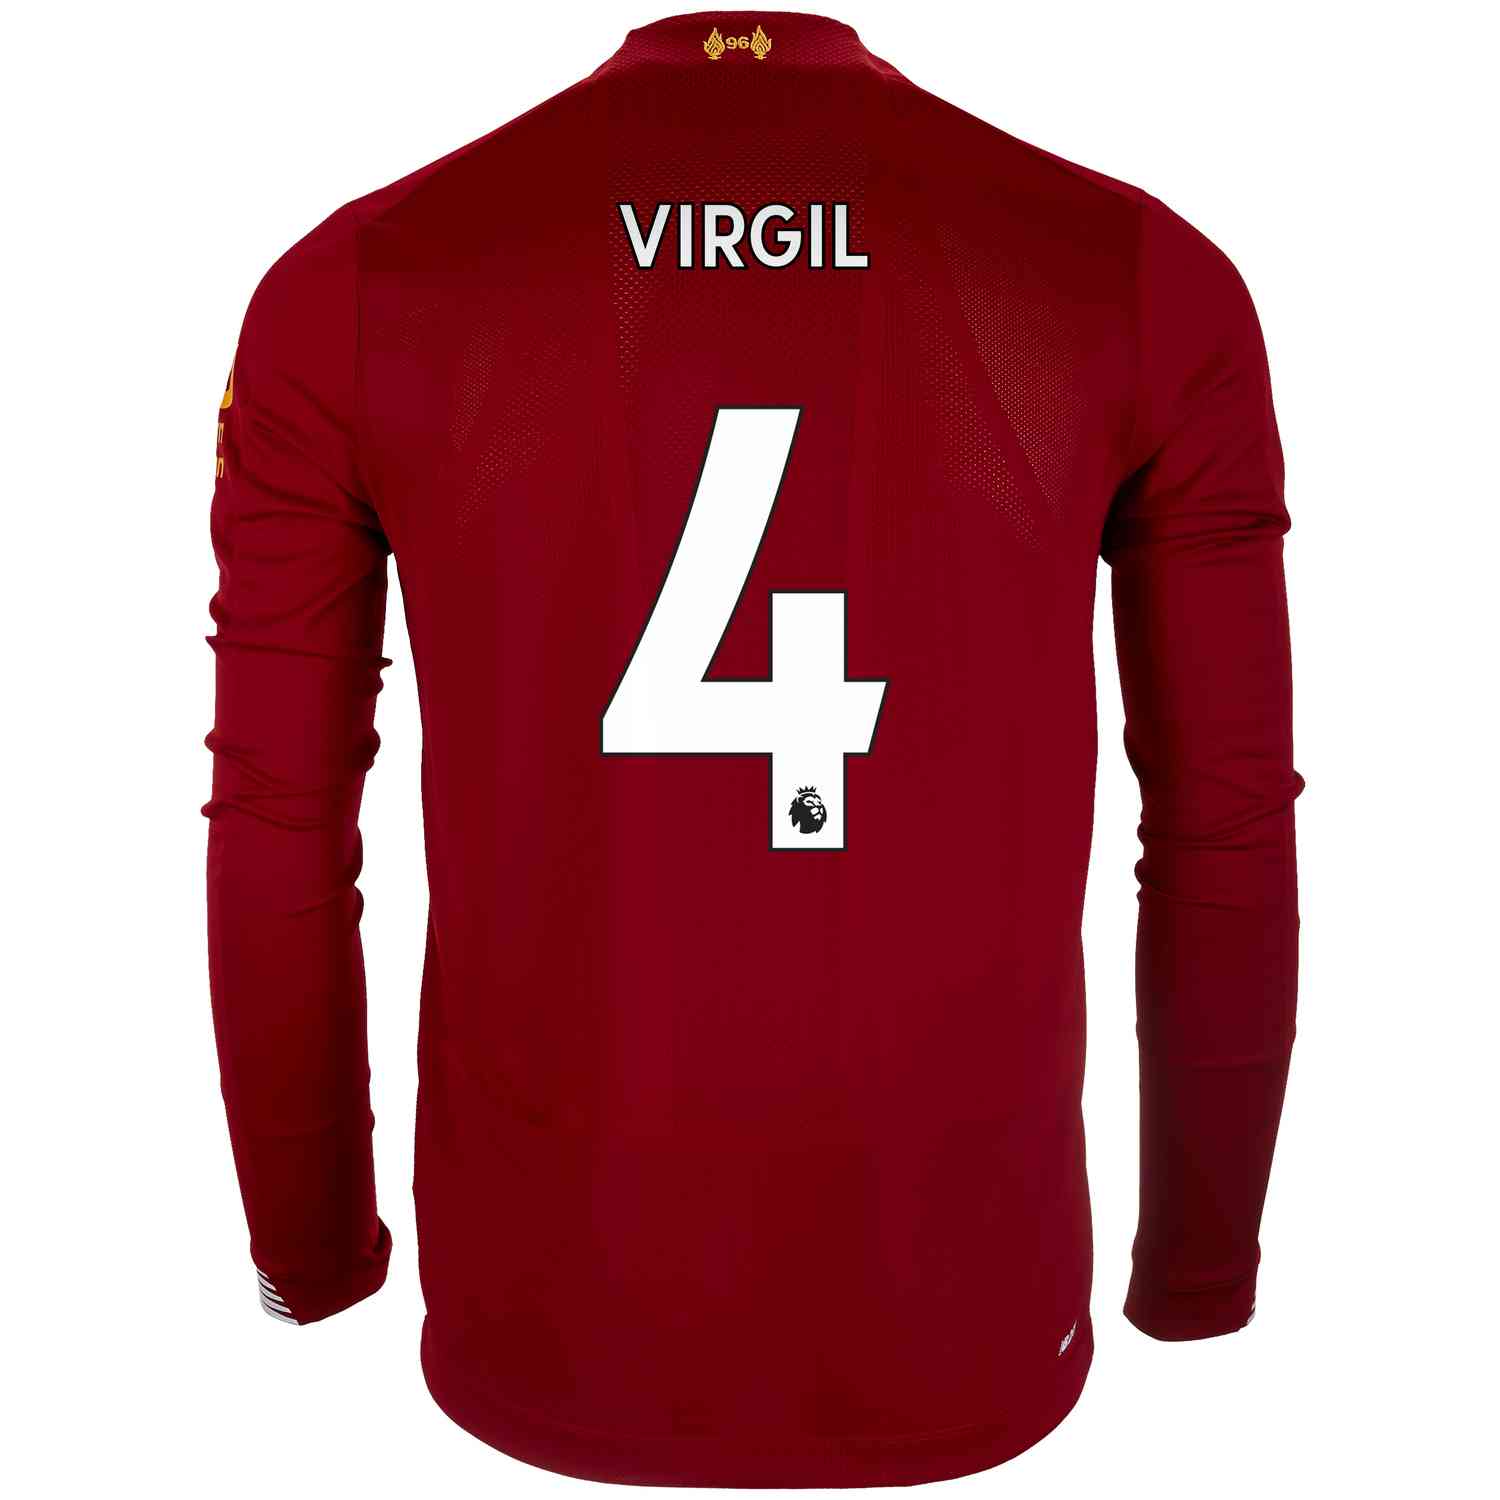 2019/20 Virgil van Dijk Liverpool Home 